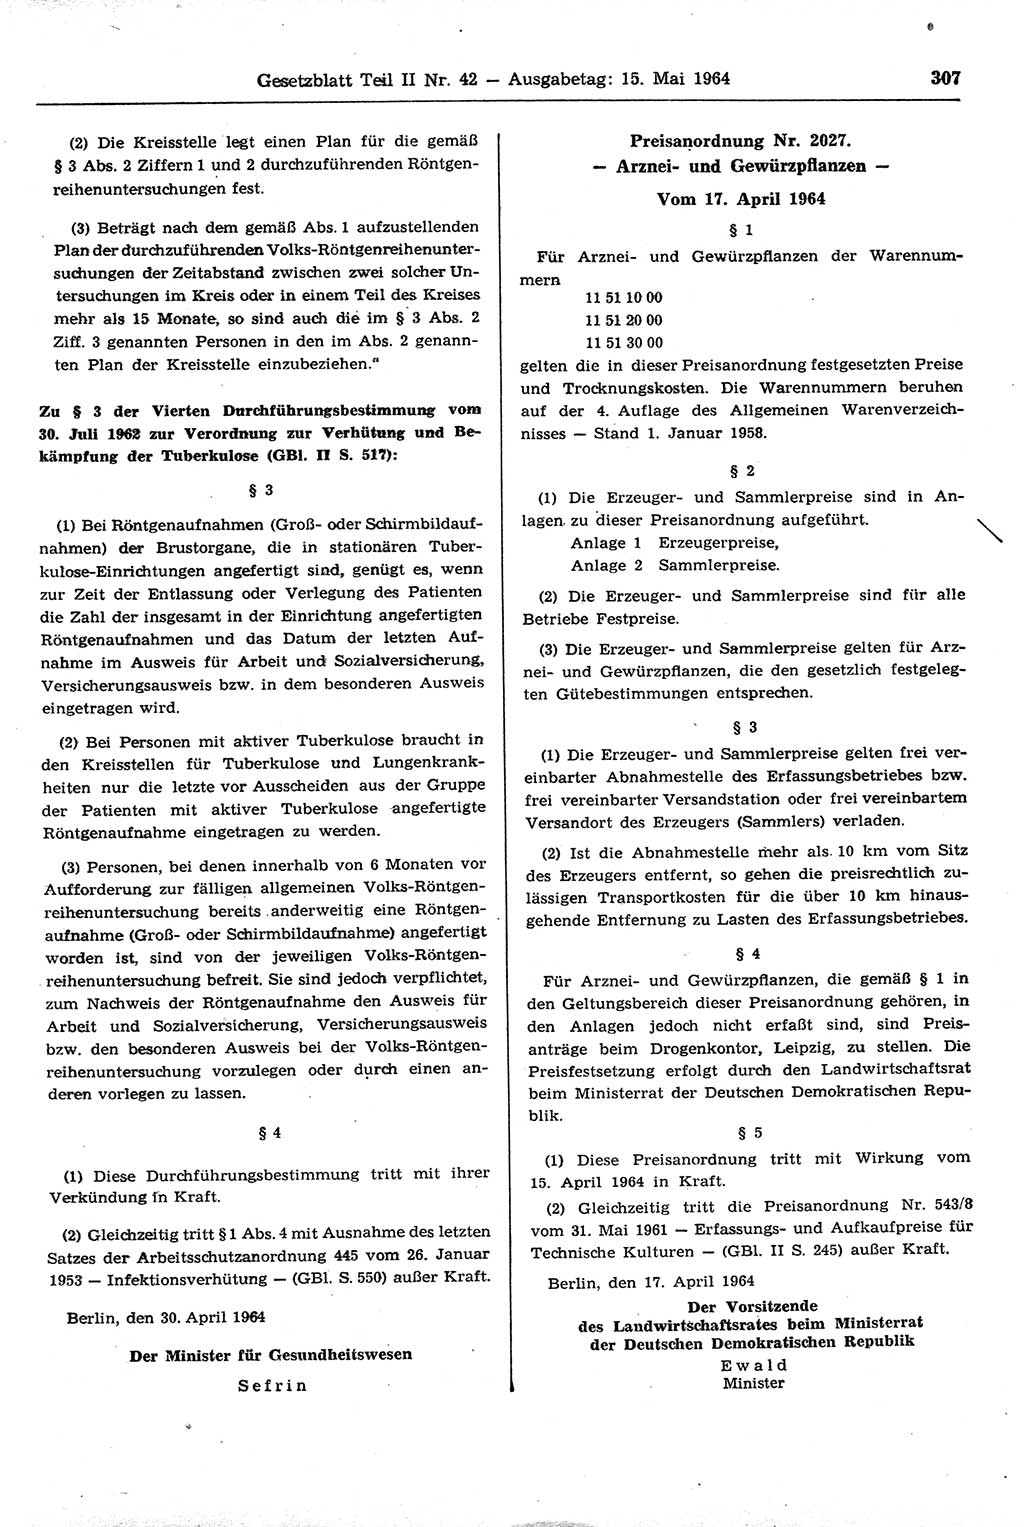 Gesetzblatt (GBl.) der Deutschen Demokratischen Republik (DDR) Teil ⅠⅠ 1964, Seite 307 (GBl. DDR ⅠⅠ 1964, S. 307)